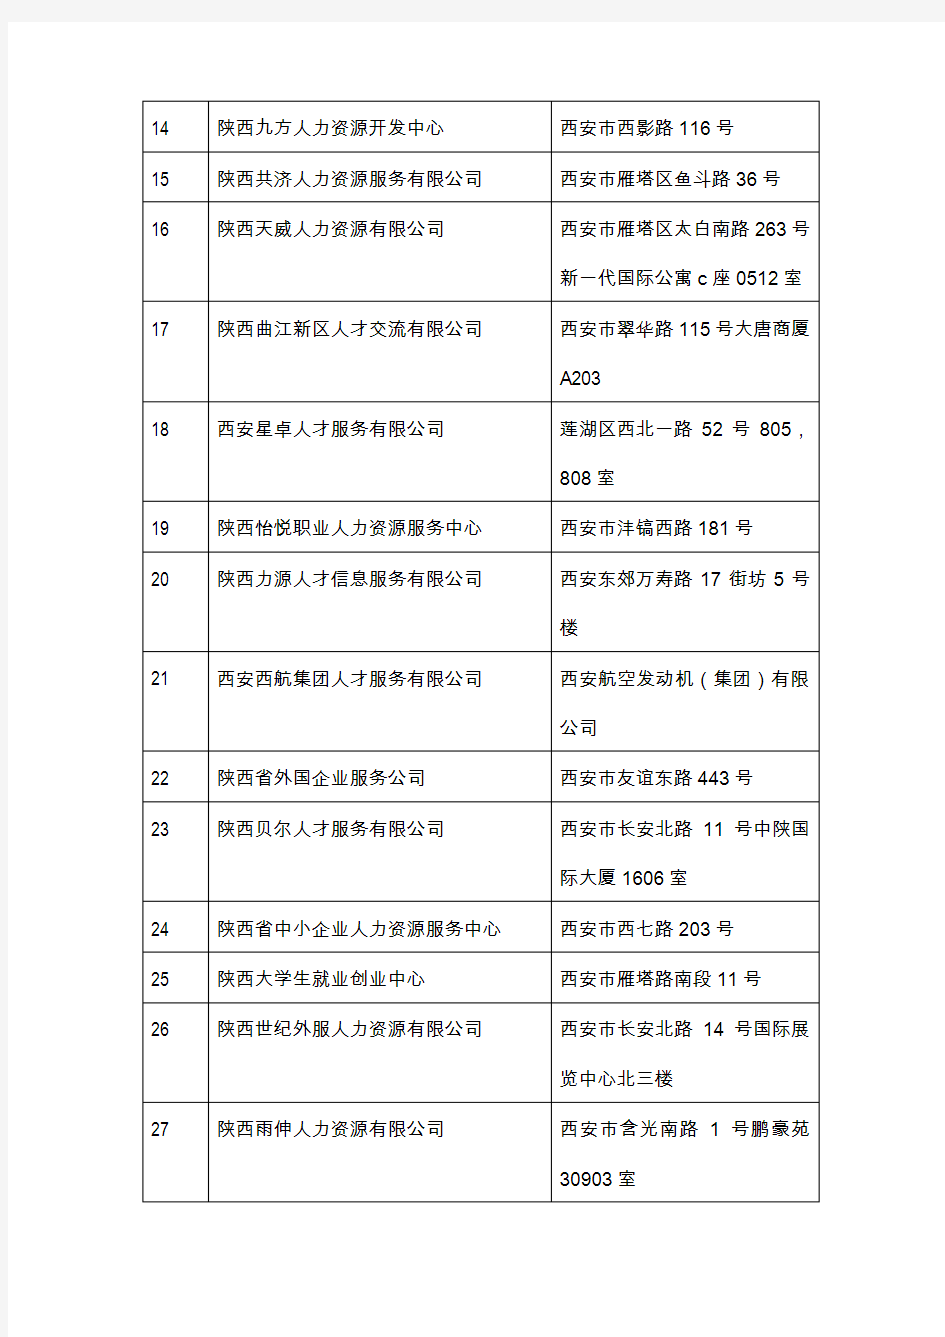 陕西省省属人力资源机构名单 精品